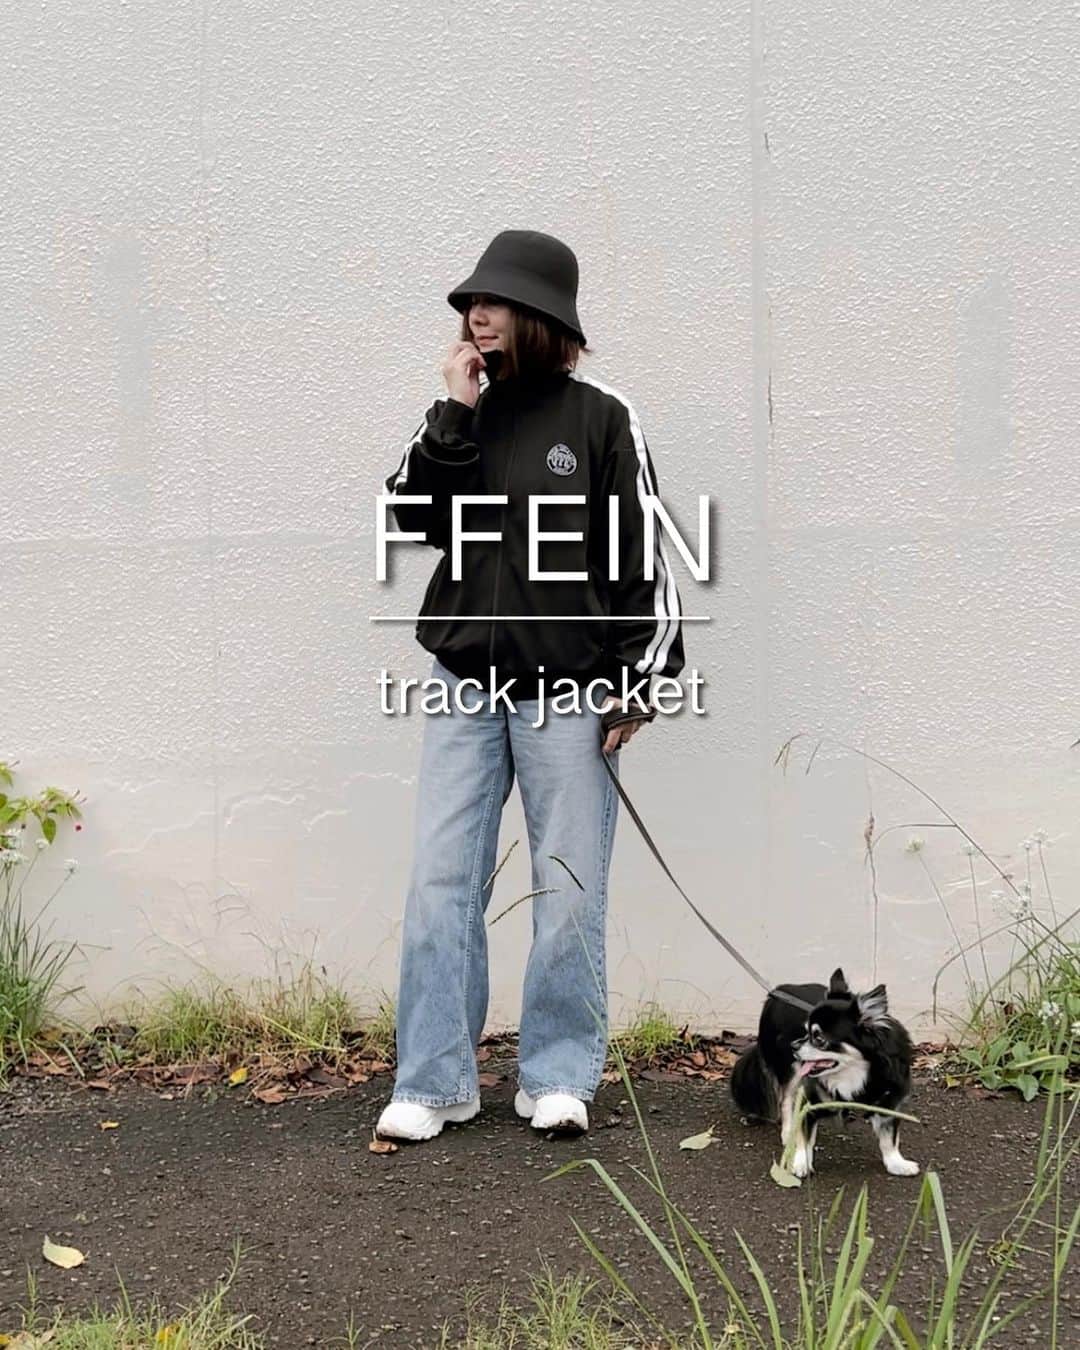 0510_nanaのインスタグラム：「❥ ❥ ❥coordinate  最近の朝のお散歩は、半袖だとちょっと涼しいけど長袖だと暑い。  だからサッと羽織れるトラックジャケットはちょうどいいんだよね。  スカートと合わせてもいいし実は使い勝手がいいのよ。  @ffein_official  FFEIN オーバーサイズワンポイントトラックジャケット  trackjacket #ffein  denim #hm sneakers #nike hat #uniqlo   #FFEIN #フェイン #ユニセックス #トレンドコーデ #カジュアルコーデ #秋服 #FFEIN購入品 #新作 #トラックジャケット #locari #骨格ストレート #骨格ストレートコーデ#プチプラコーデ #パーソナルカラーオータム  #イエベ秋 #イエベ秋コーデ #40代コーデ #アラフォーコーデ #50代コーデ #アラフィフコーデ #チワワ」